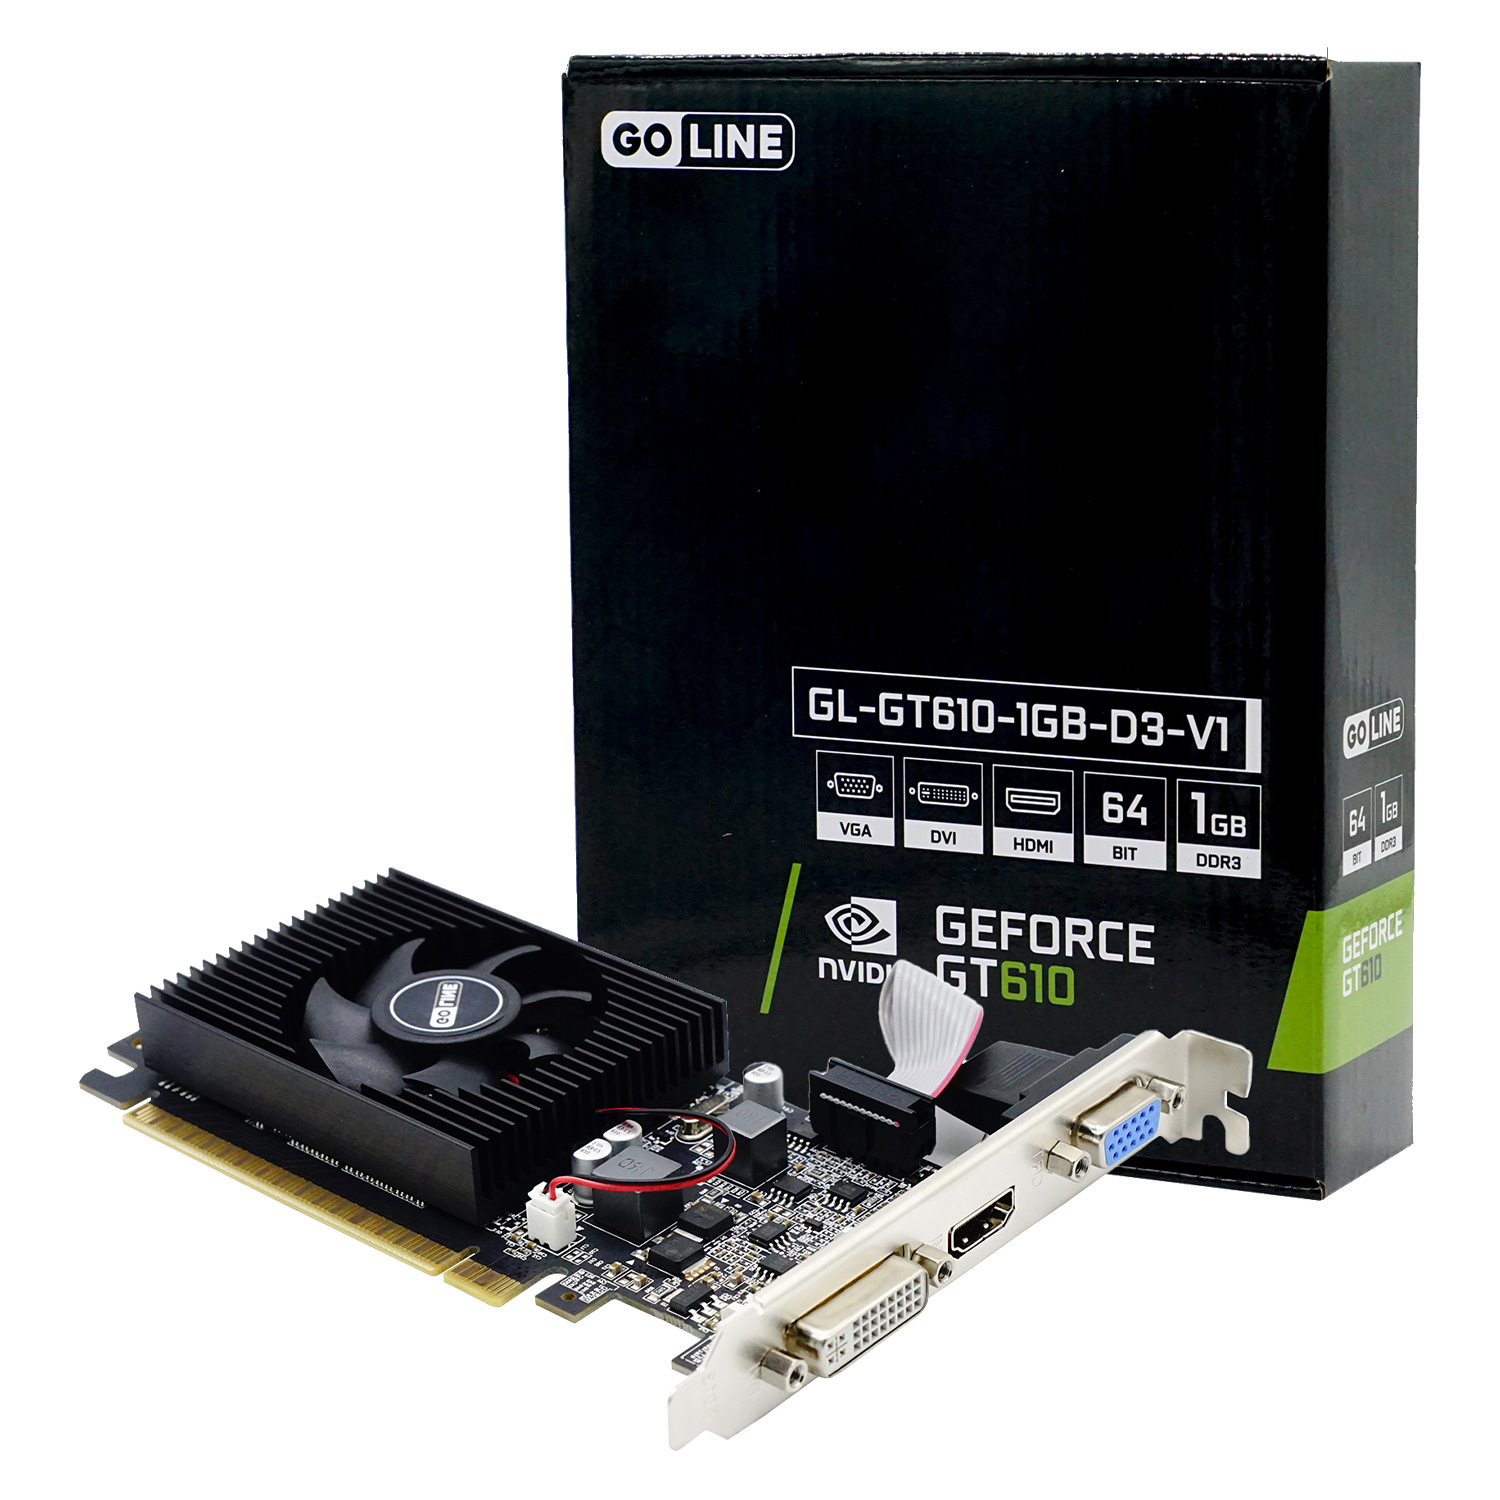 Placa de Vídeo Goline GT 610 NVIDIA GeForce GT 610 1GB DDR3 - GL-GT610-1GB-D3-V1 (1 Ano de Garantia)